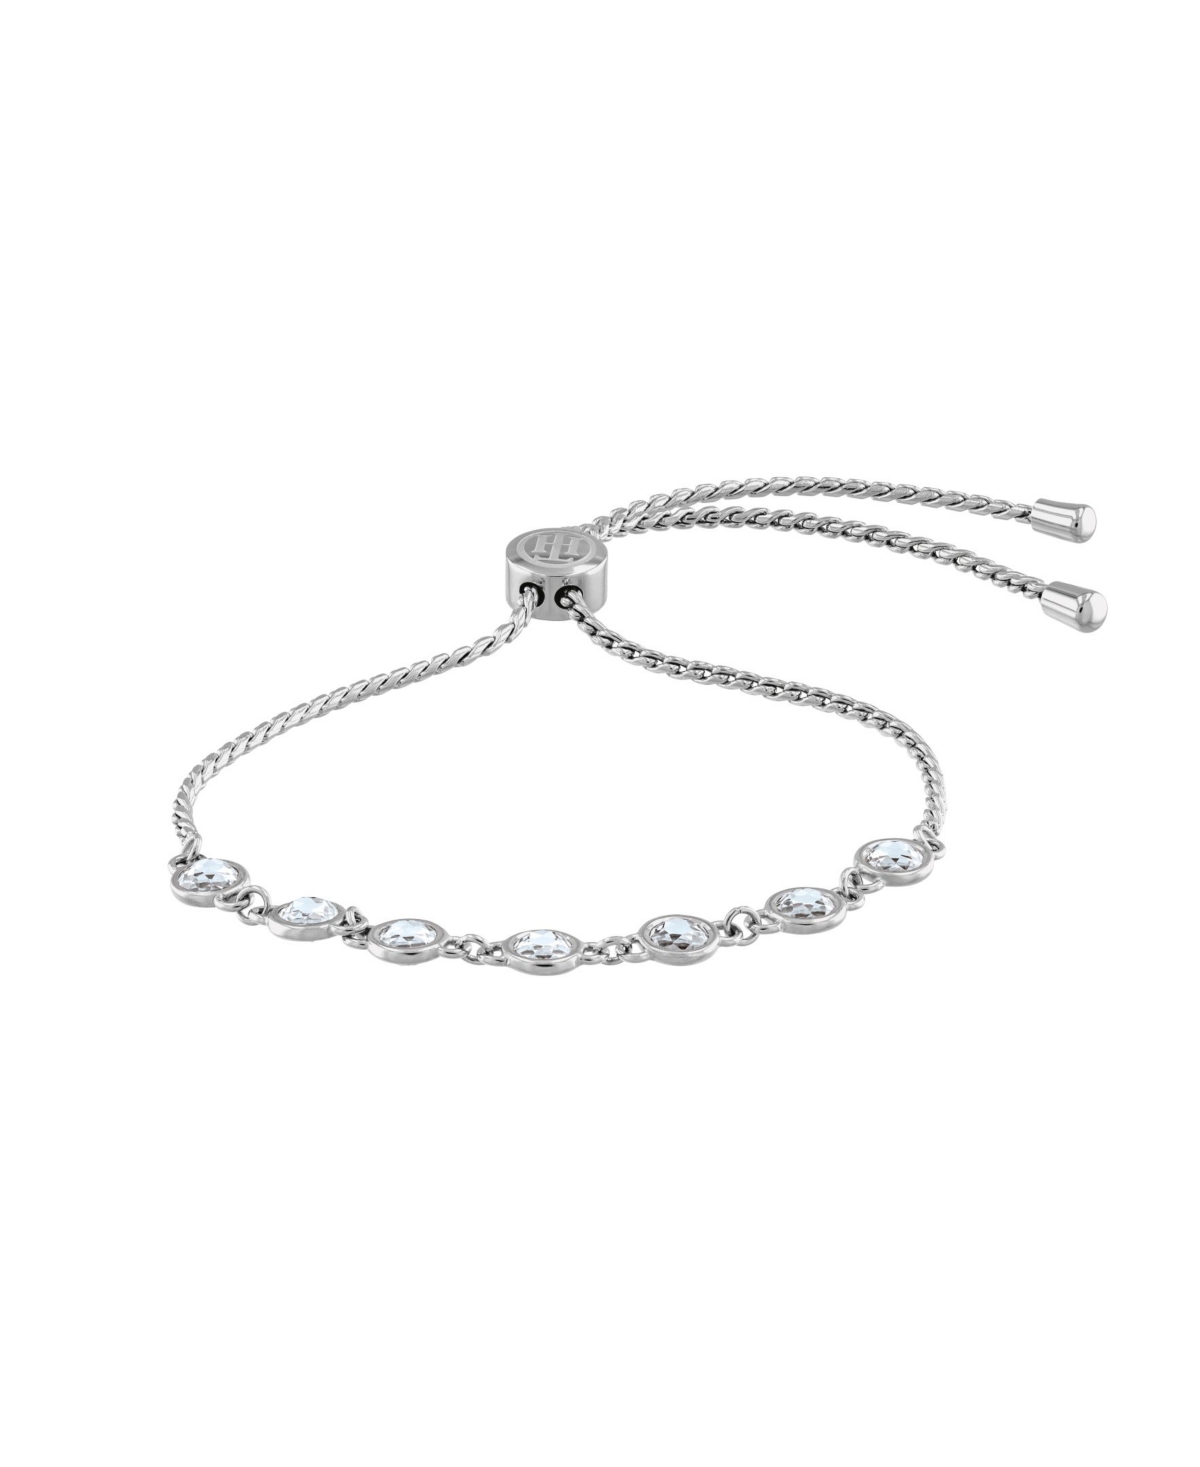 Women's Silver-Tone Stainless Steel Bracelet - Silver-tone